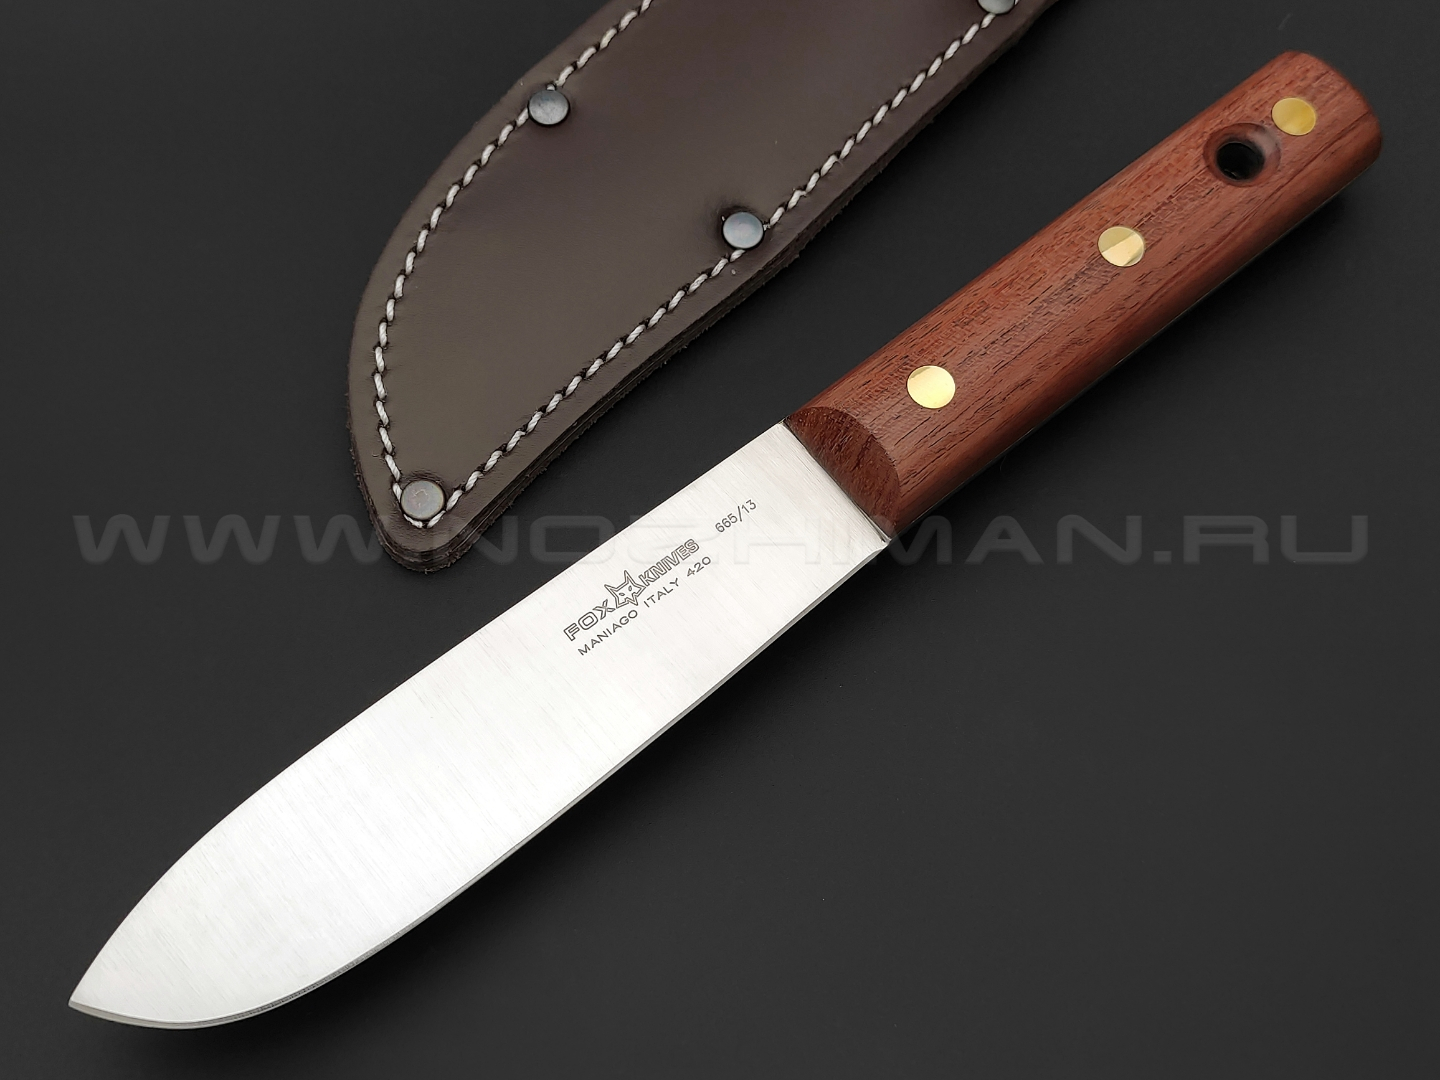 Нож Fox Old 665/13 сталь 420С, рукоять Дерево палисандр